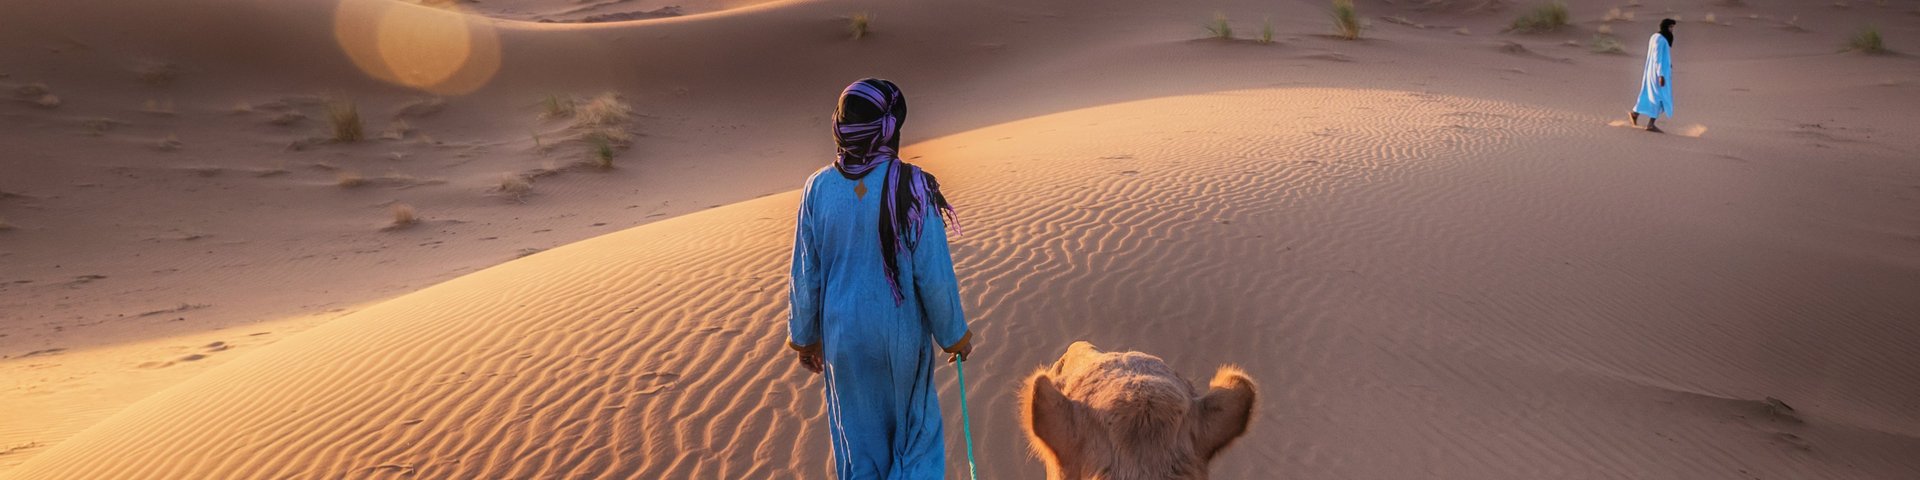 Tuareg mit seinem Kamel unterwegs in den Dünen der Sahara